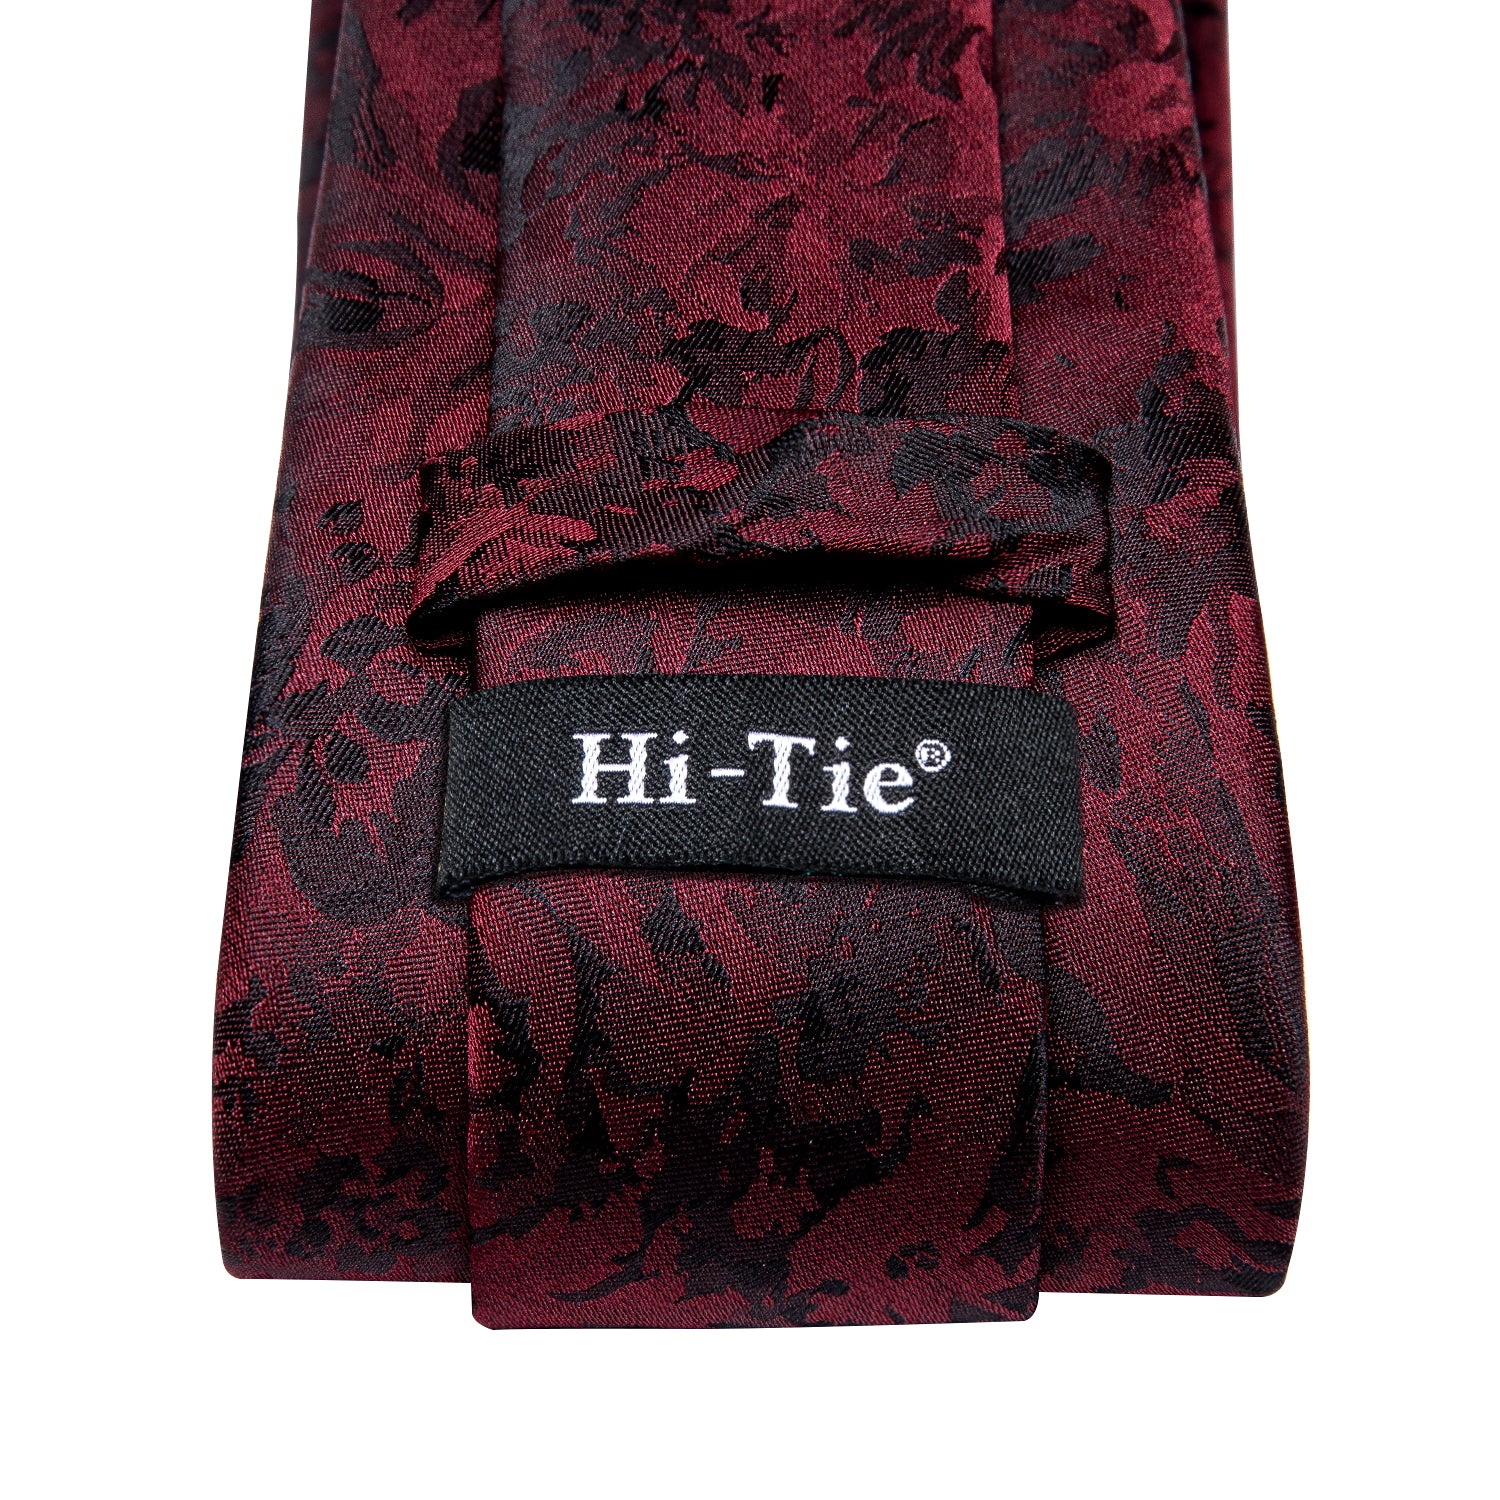 Red Black Floral Tie Pocket Square Cufflinks Set